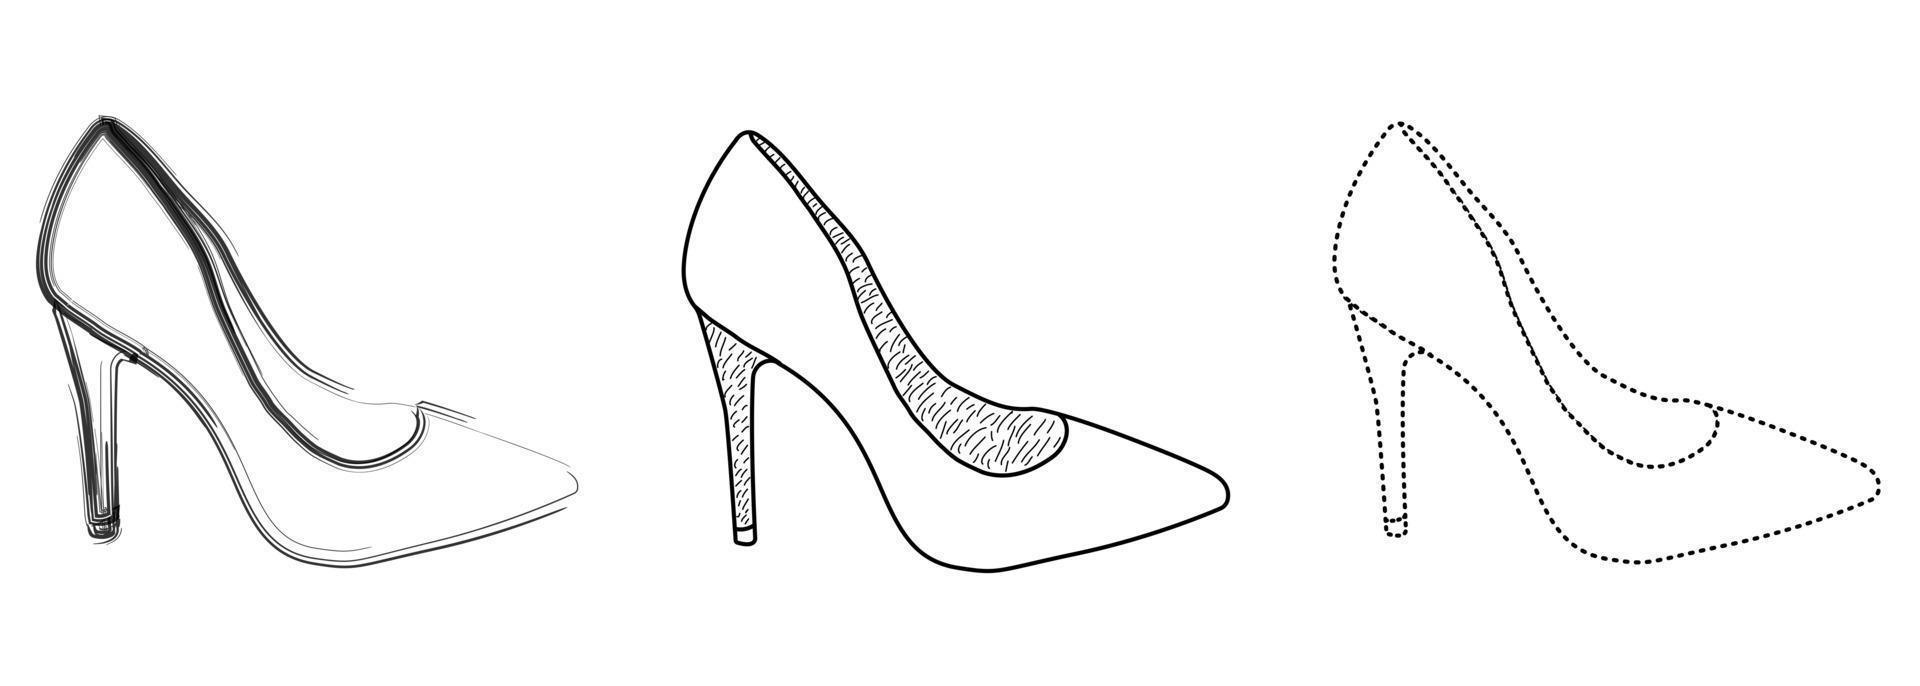 disegno schizzo sagoma sagoma di scarpe da donna alla moda. stile della linea e pennellate vettore